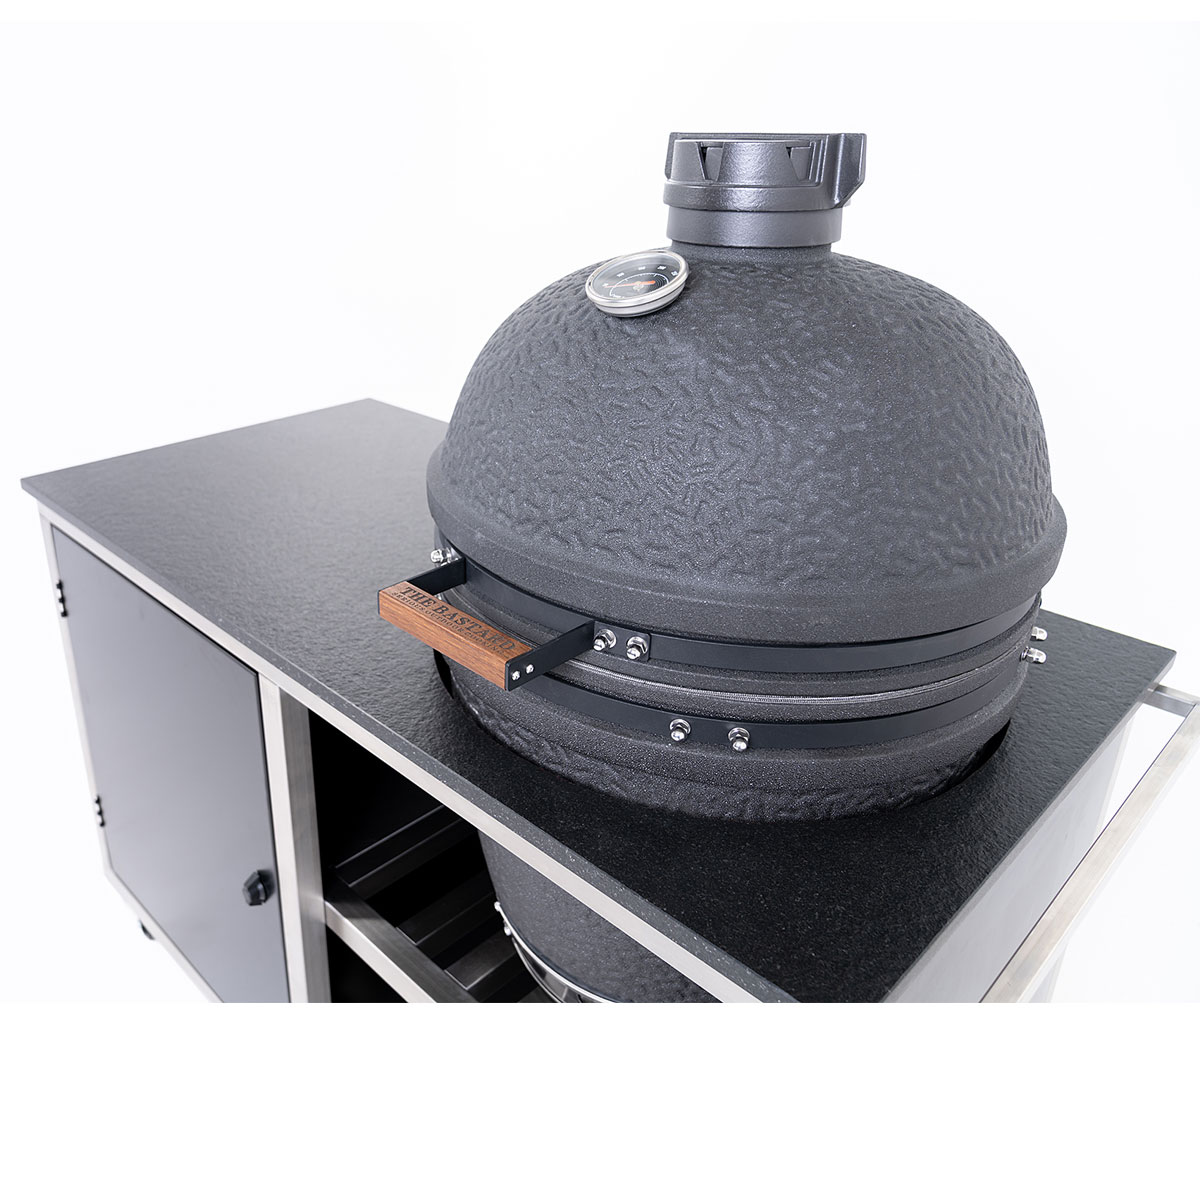 INDRAdesign Blackline Küchenmodul für Keramikgrill Ø 60 cm, schwarz